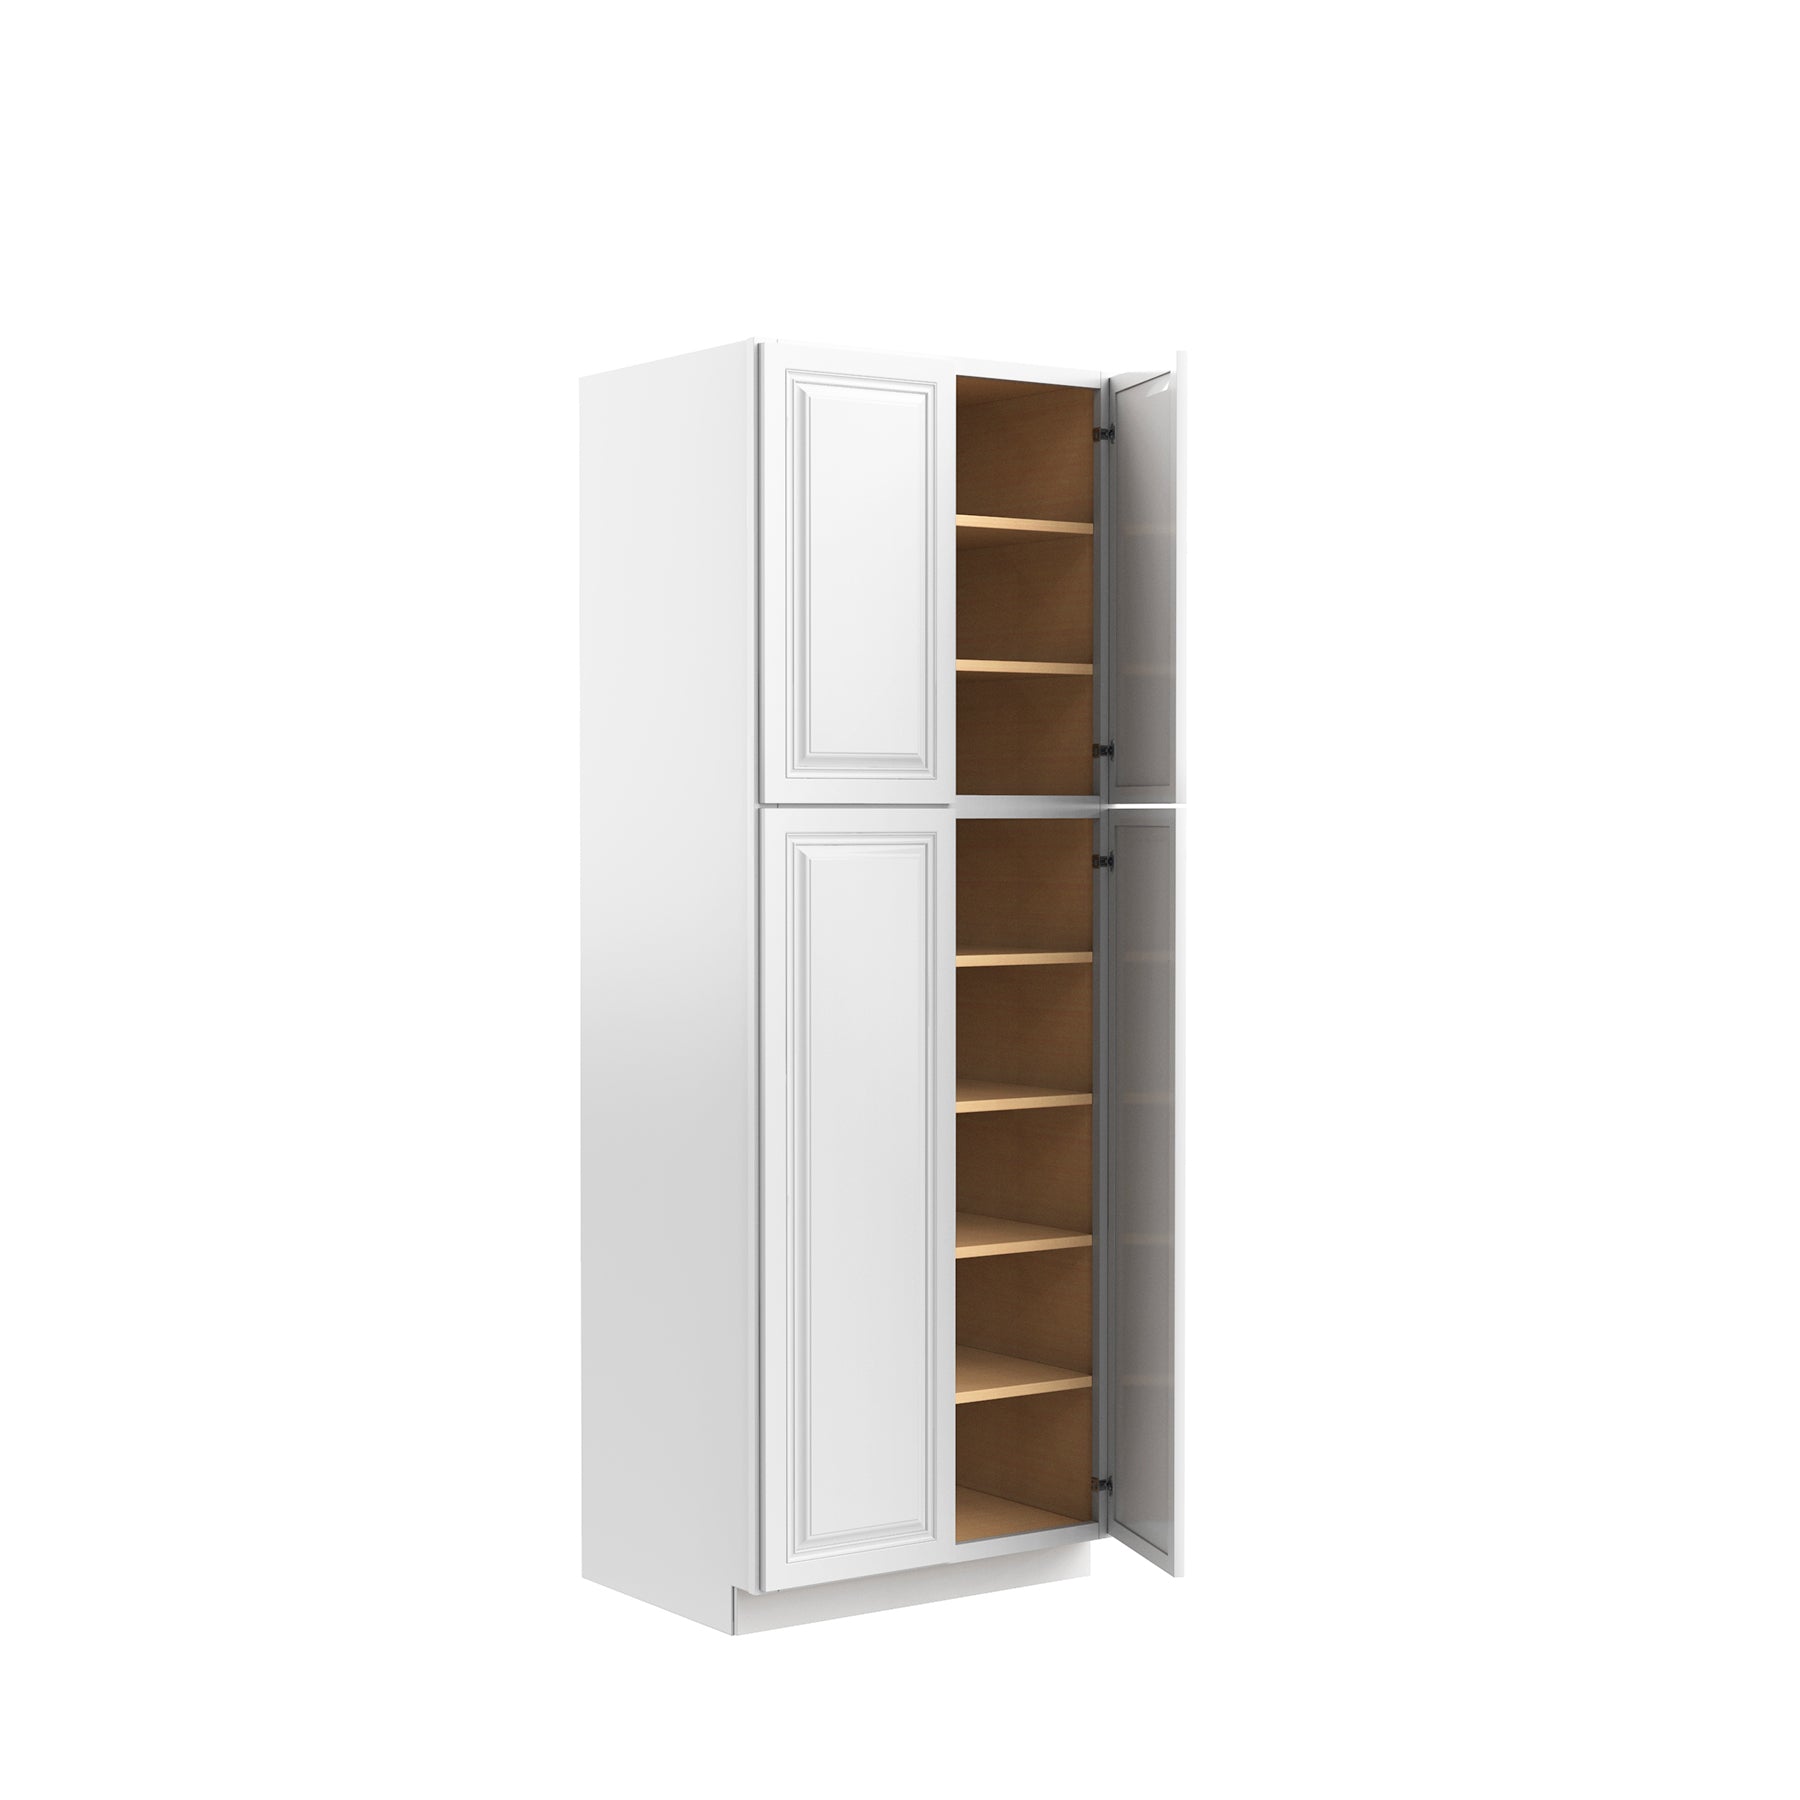 Park Avenue White - Double Door Utility Cabinet | 30"W x 84"H x 24"D